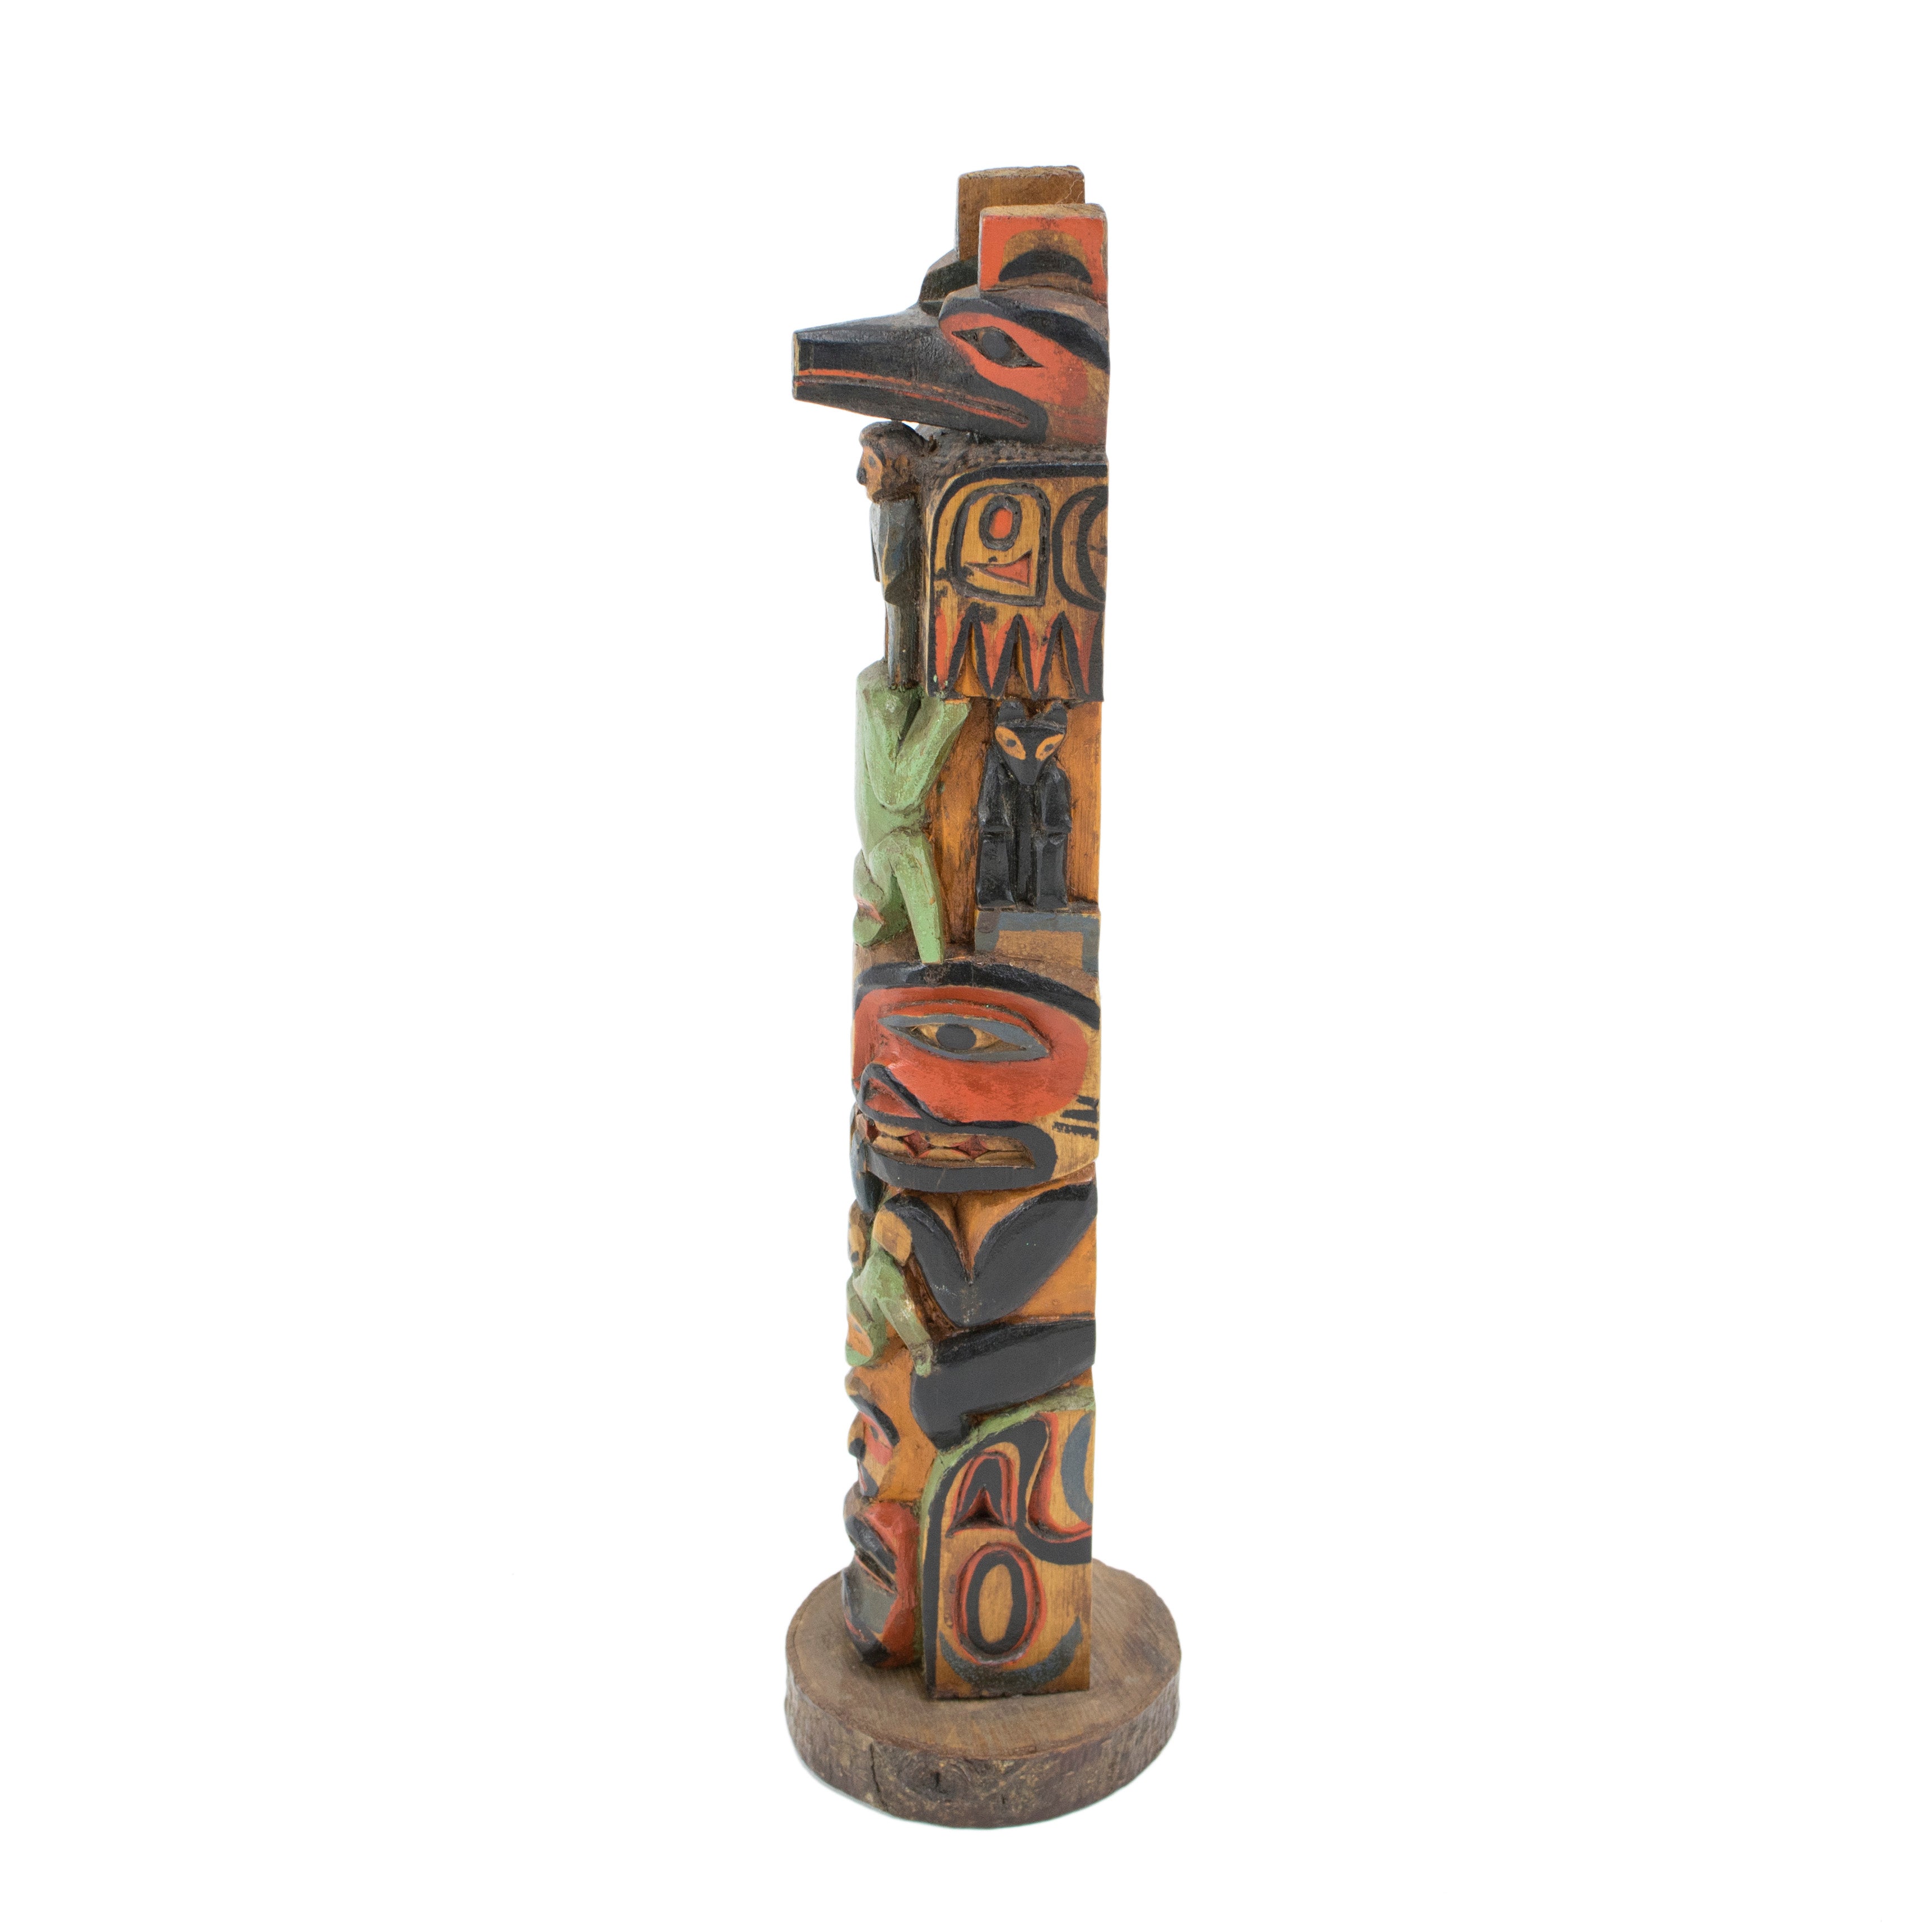 Pacheedaht/Nuu-chah-nulth Totem by Samuel Jackson